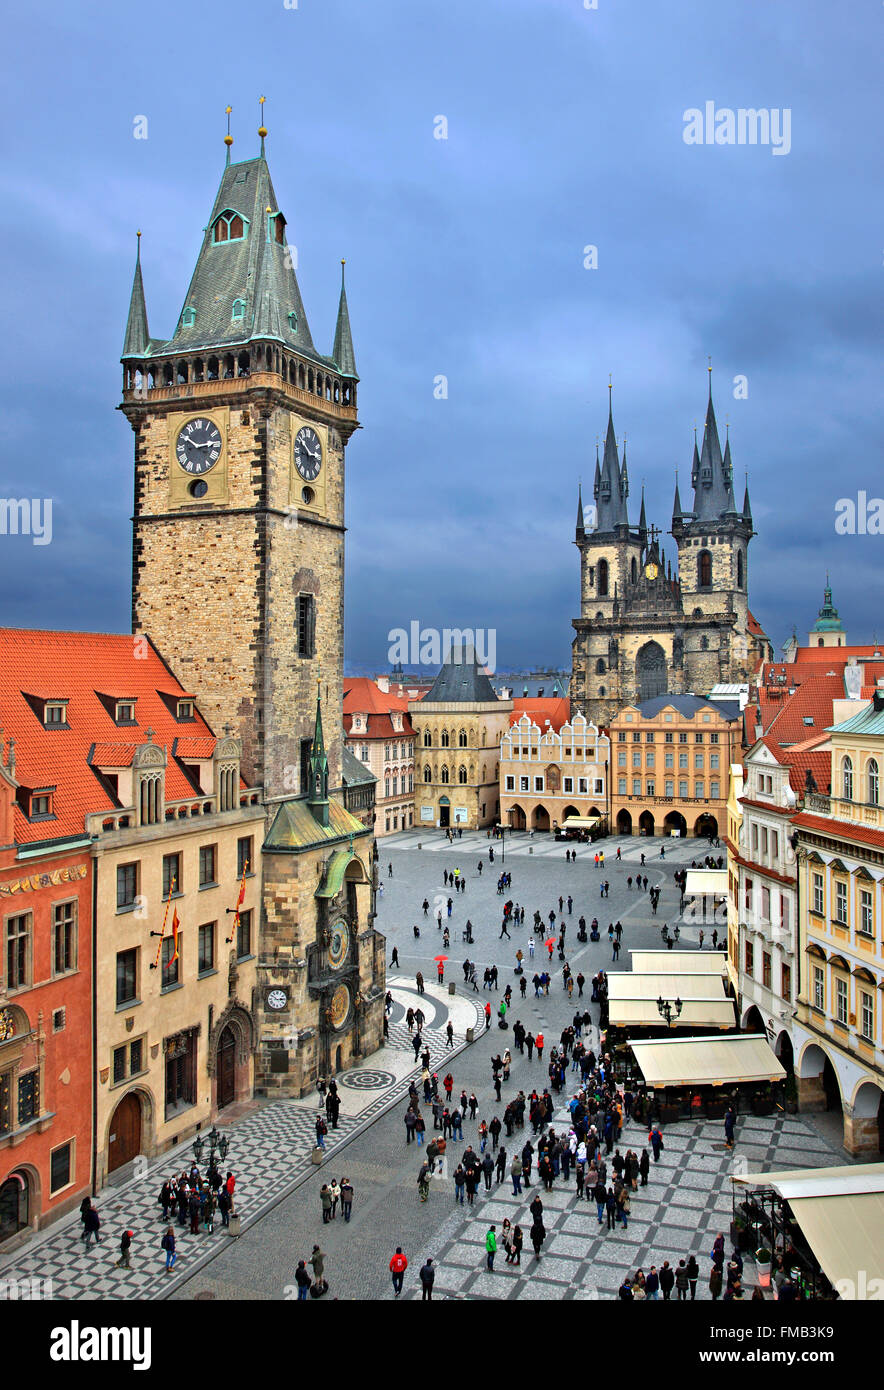 Der Altstädter Ring, Stare Mesto ("Old Town"), Prag, Tschechische Republik. Stockfoto